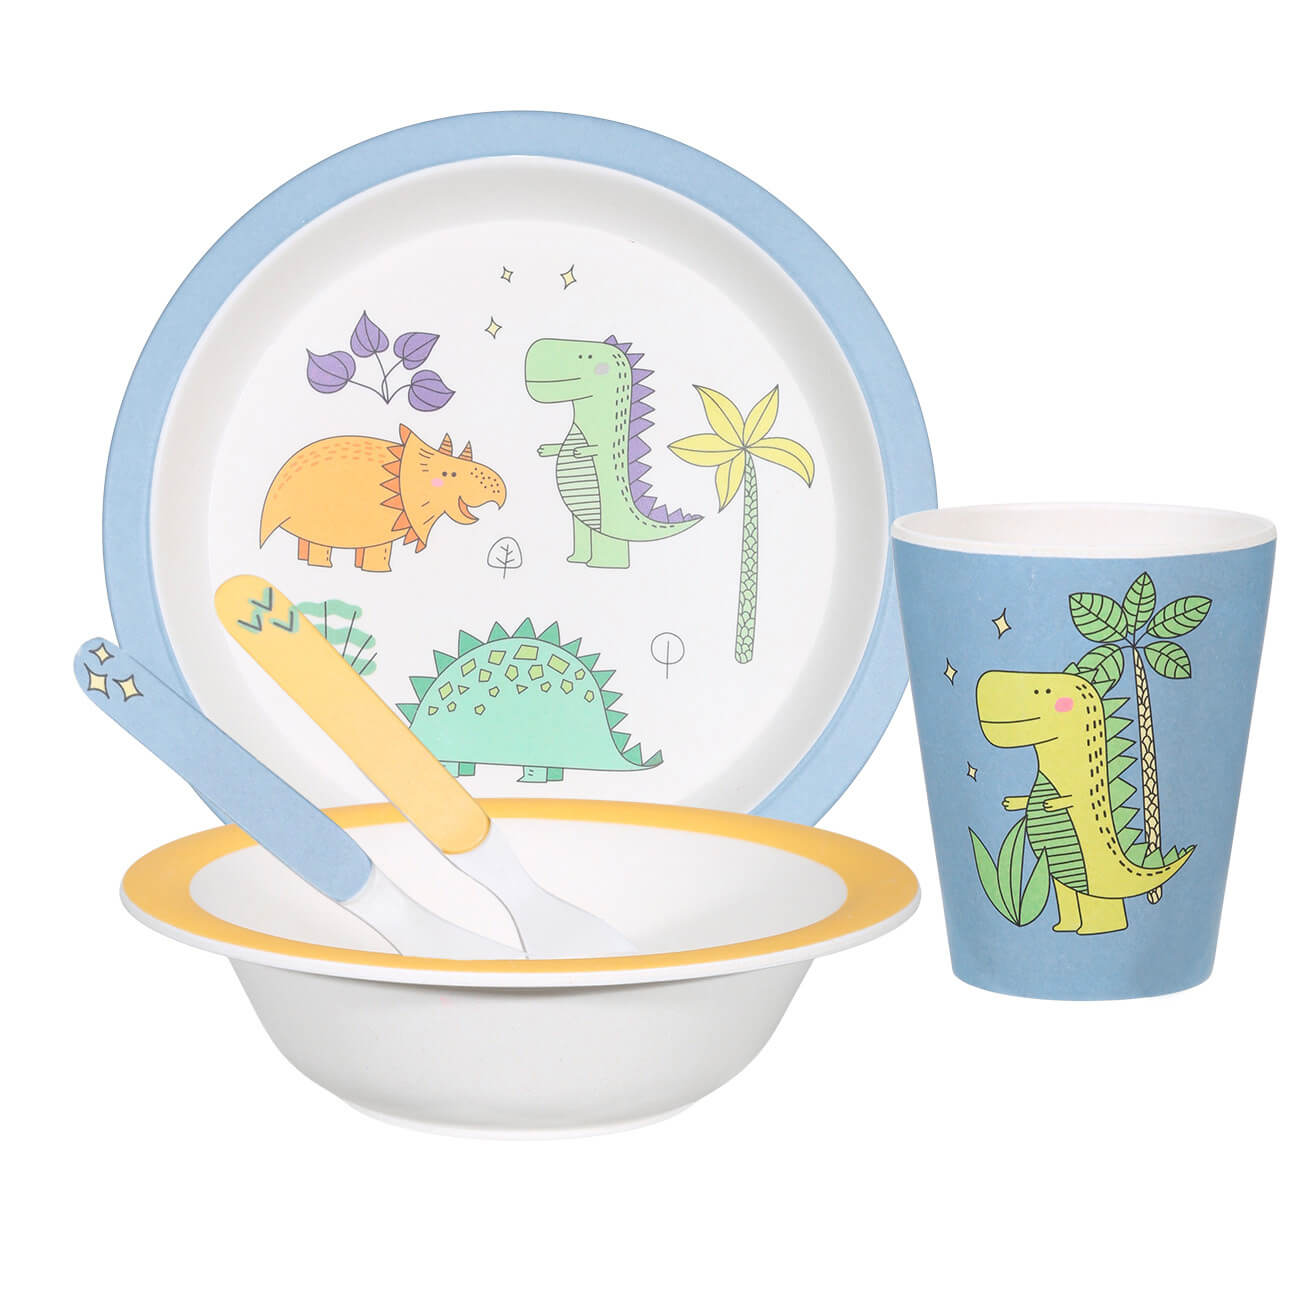 Набор посуды, детский, 5 пр, бамбук, желто-голубой, Динозавр, Dino изображение № 1